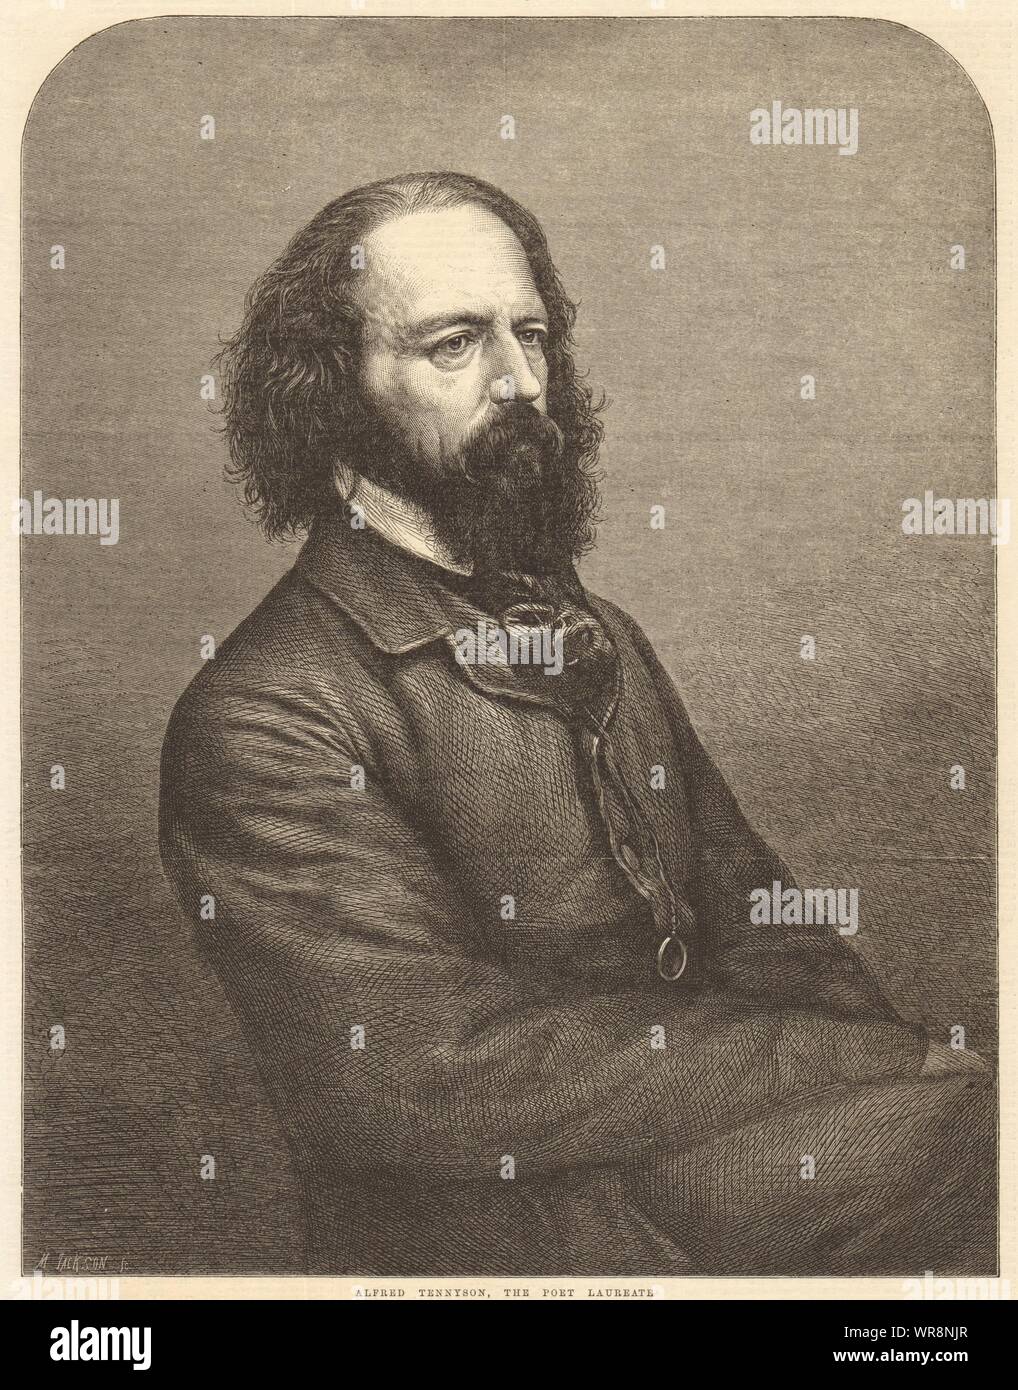 Alfred Tennyson, der Poet Laureate. England 1864 Antike ILN volle Seite drucken Stockfoto